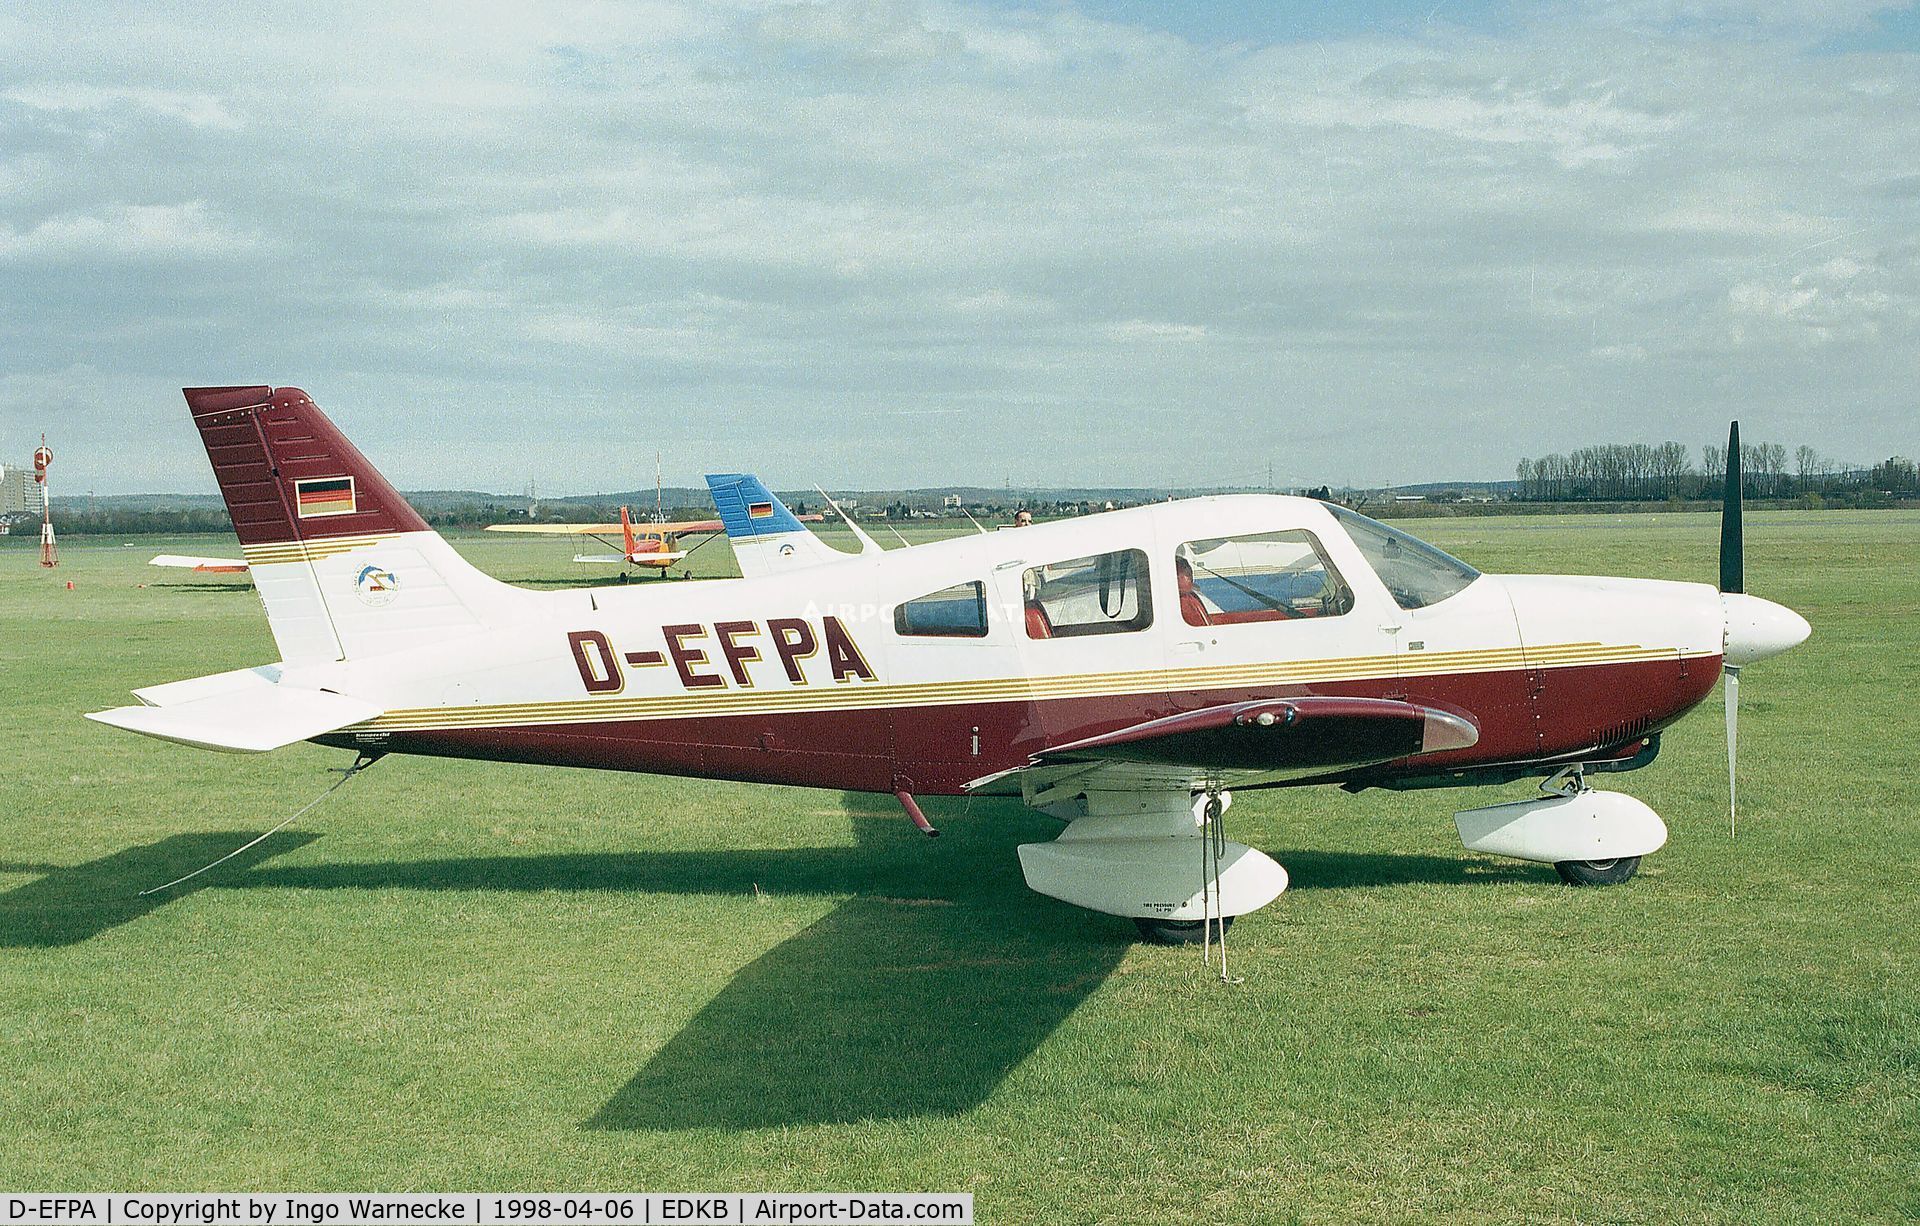 D-EFPA, 1978 Piper PA-28-181 C/N 28-90077, Piper PA-28-181 Archer II at Bonn-Hangelar airfield